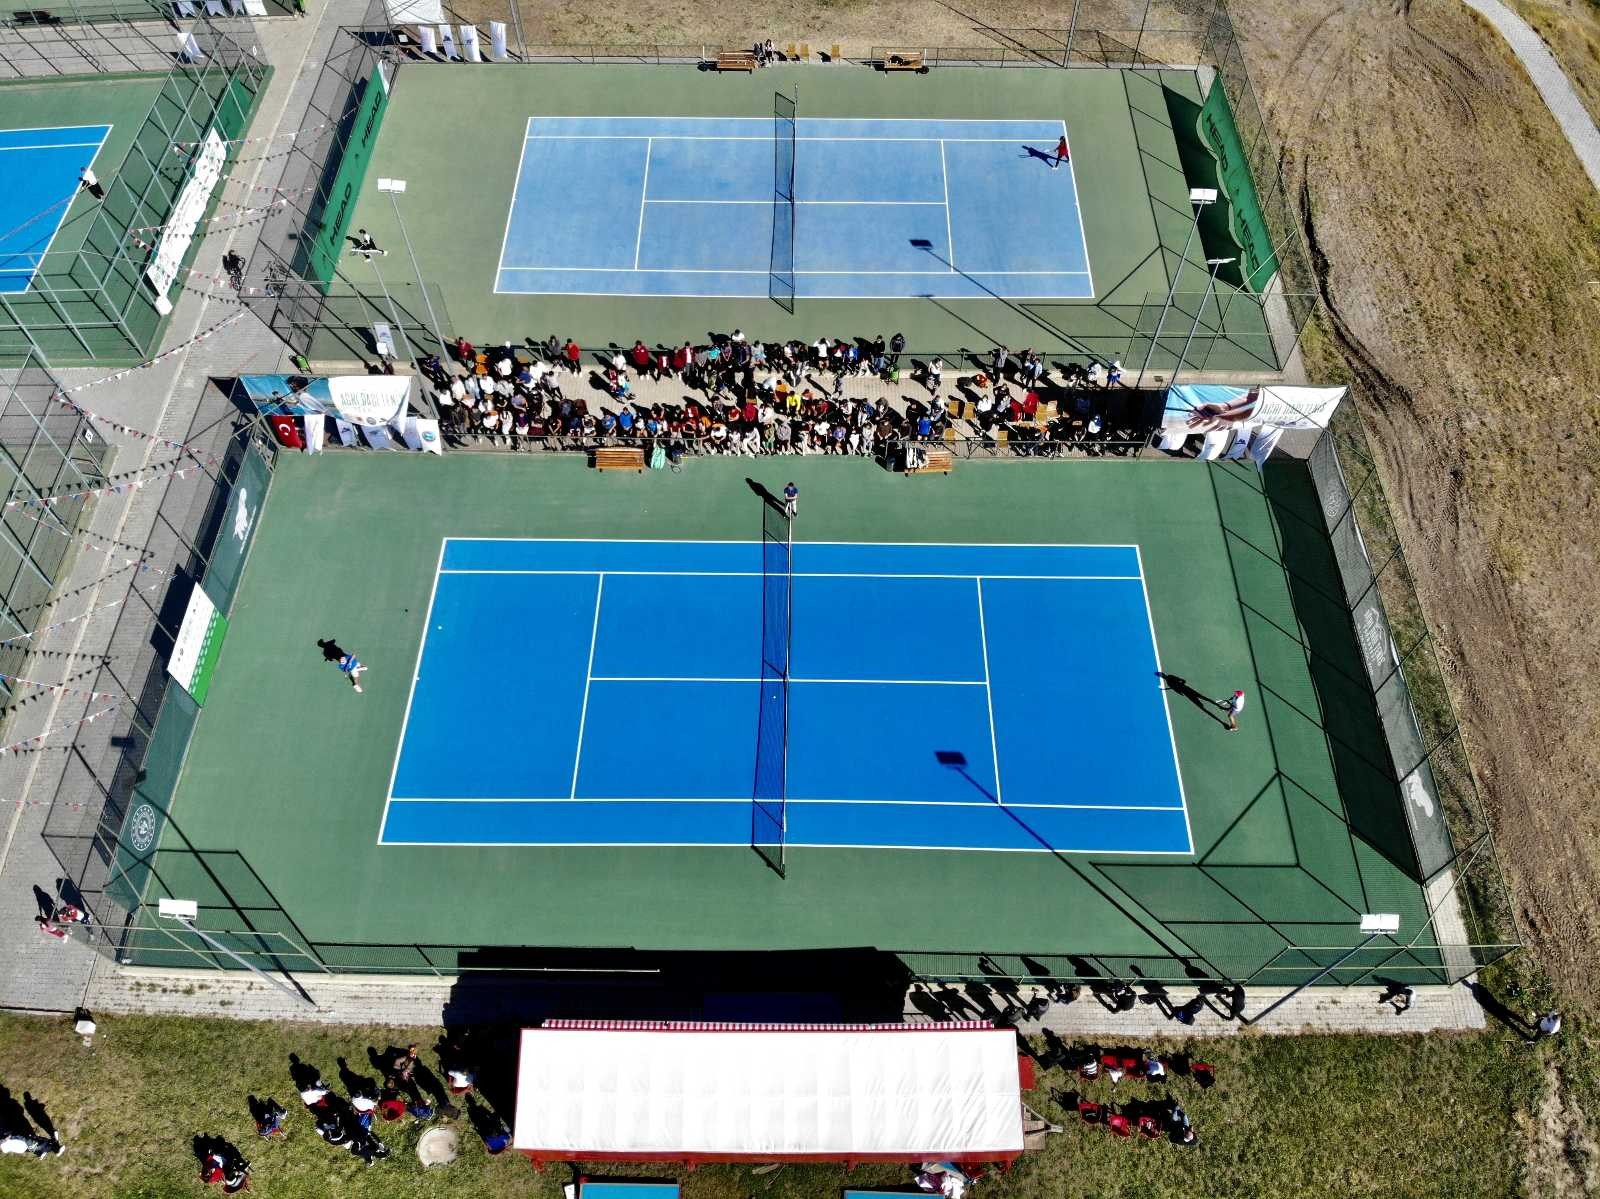 Ağrı Dağı Tenis Turnuvası sona erdi #agri